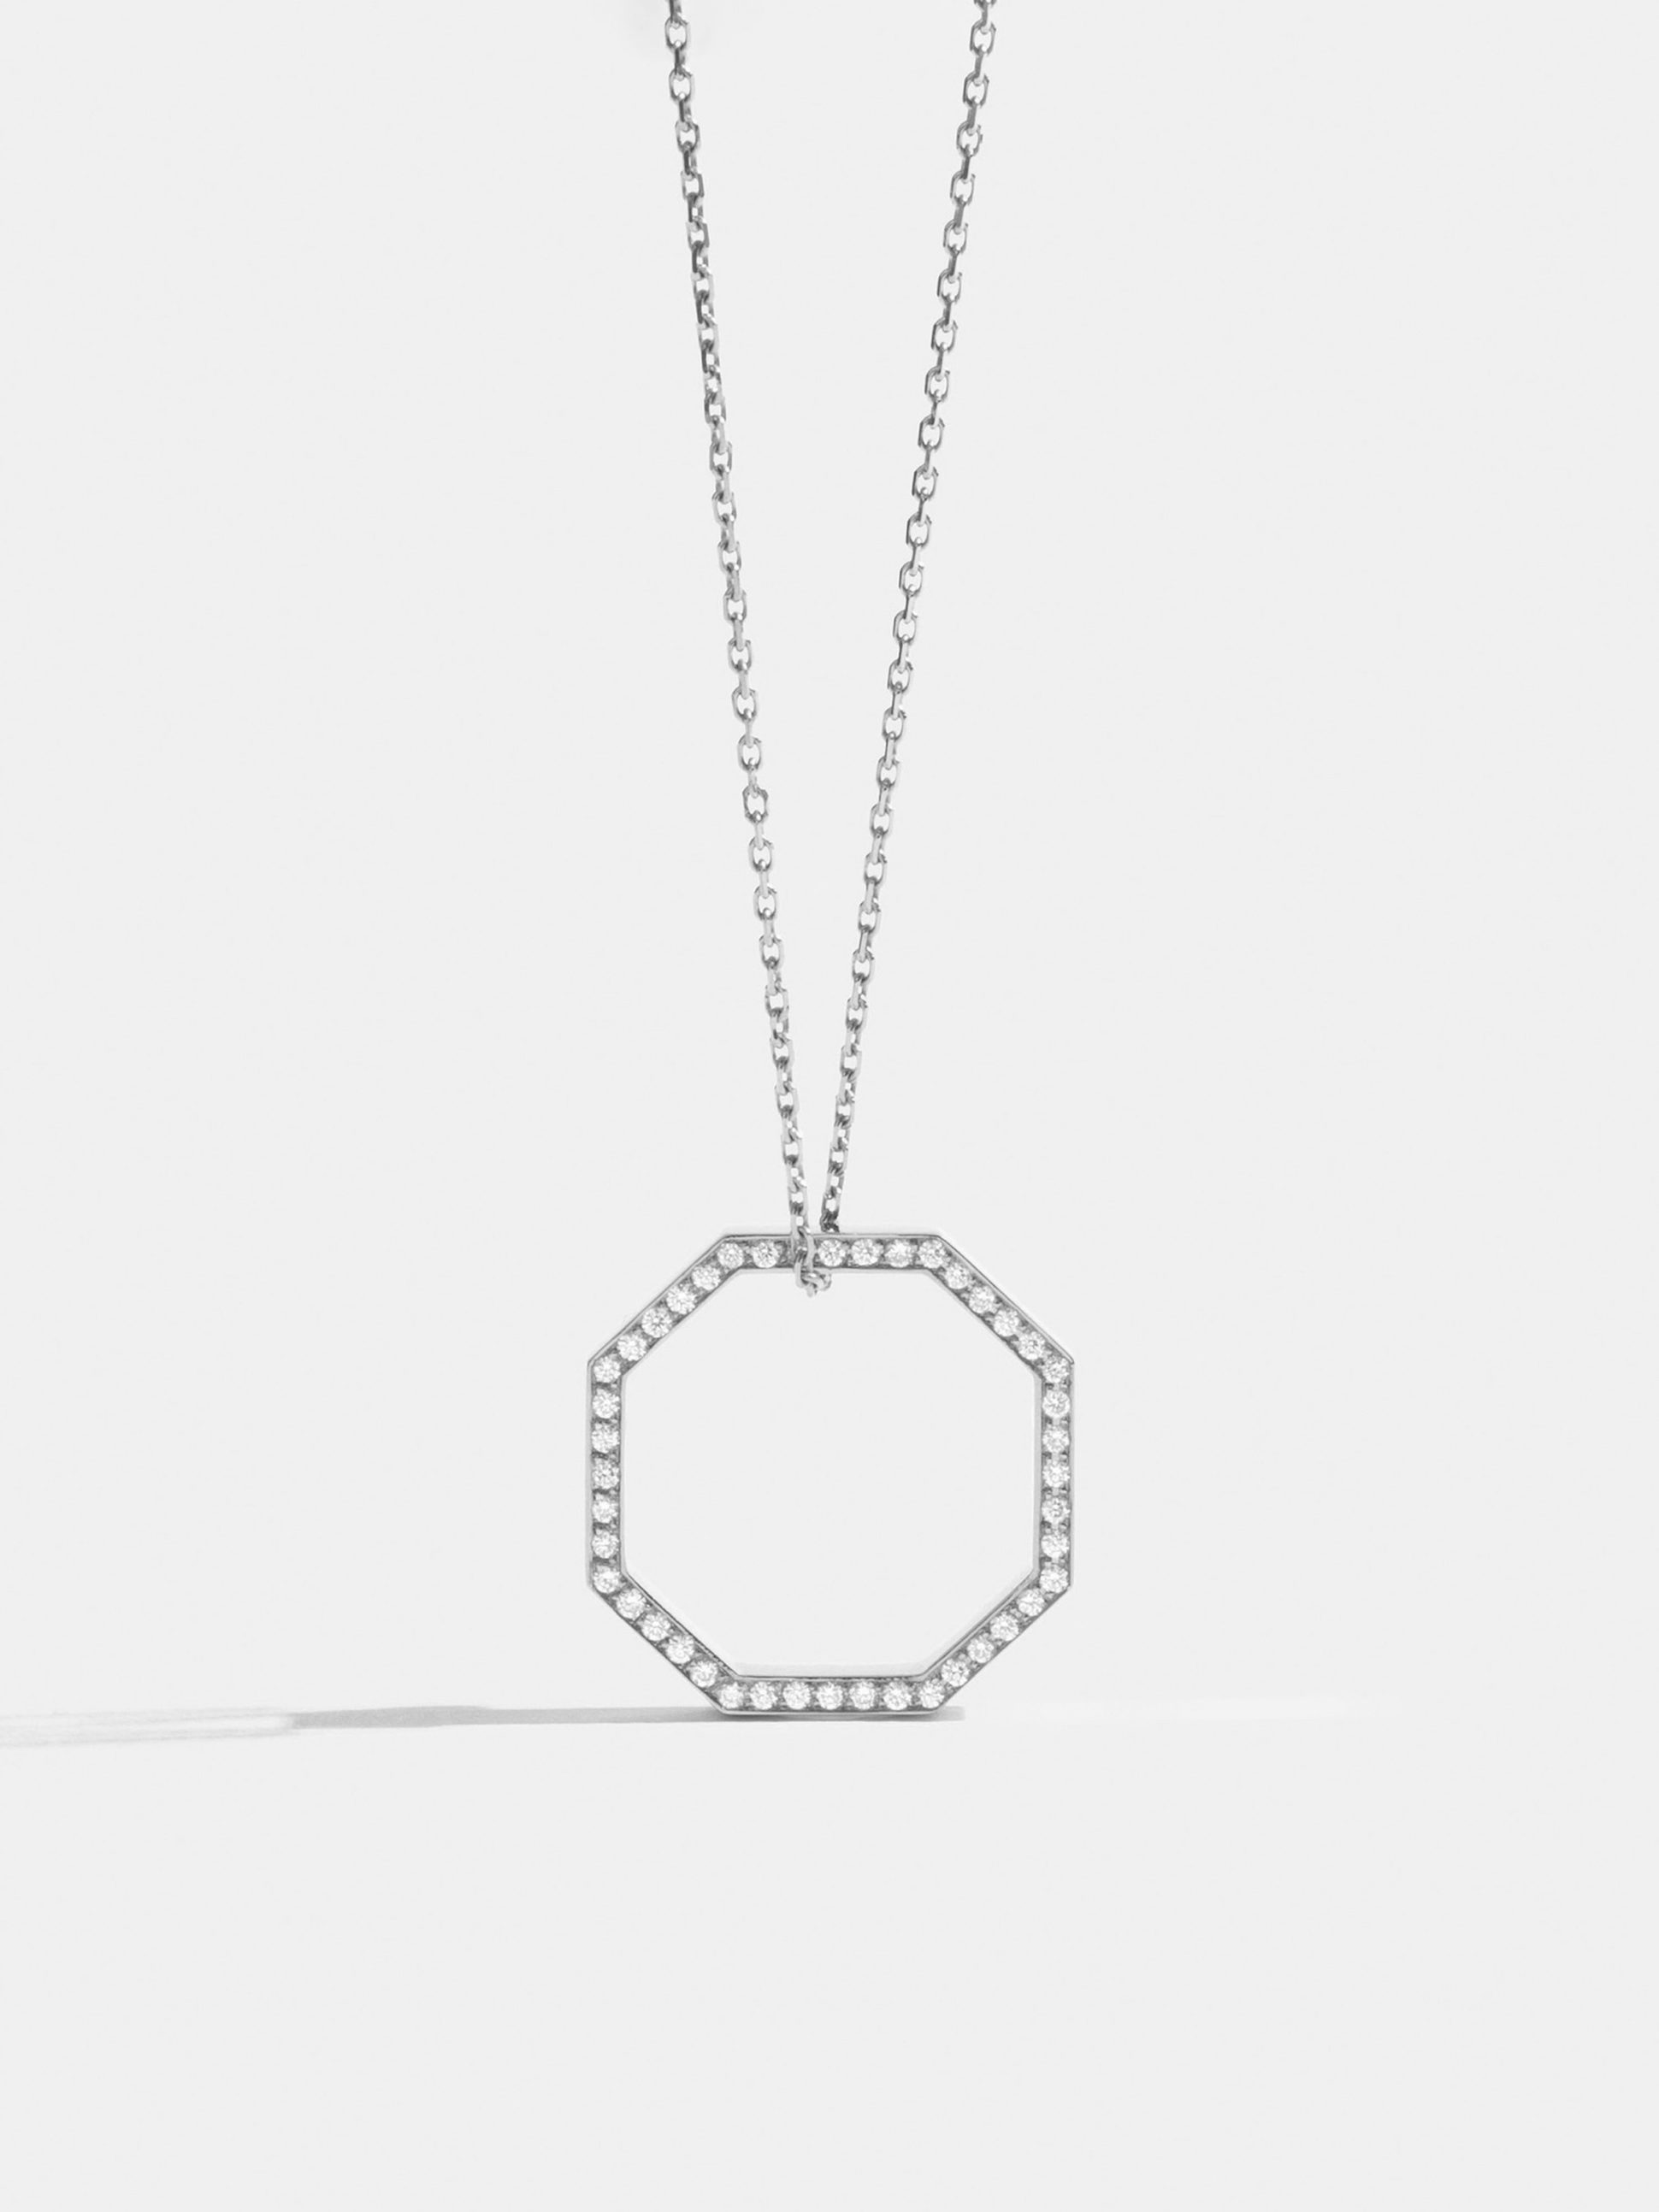 Sautoir Octogone de 18mm en Or blanc éthique 18 carats certifié Fairmined et diamants de synthèse, sur chaîne de 88cm